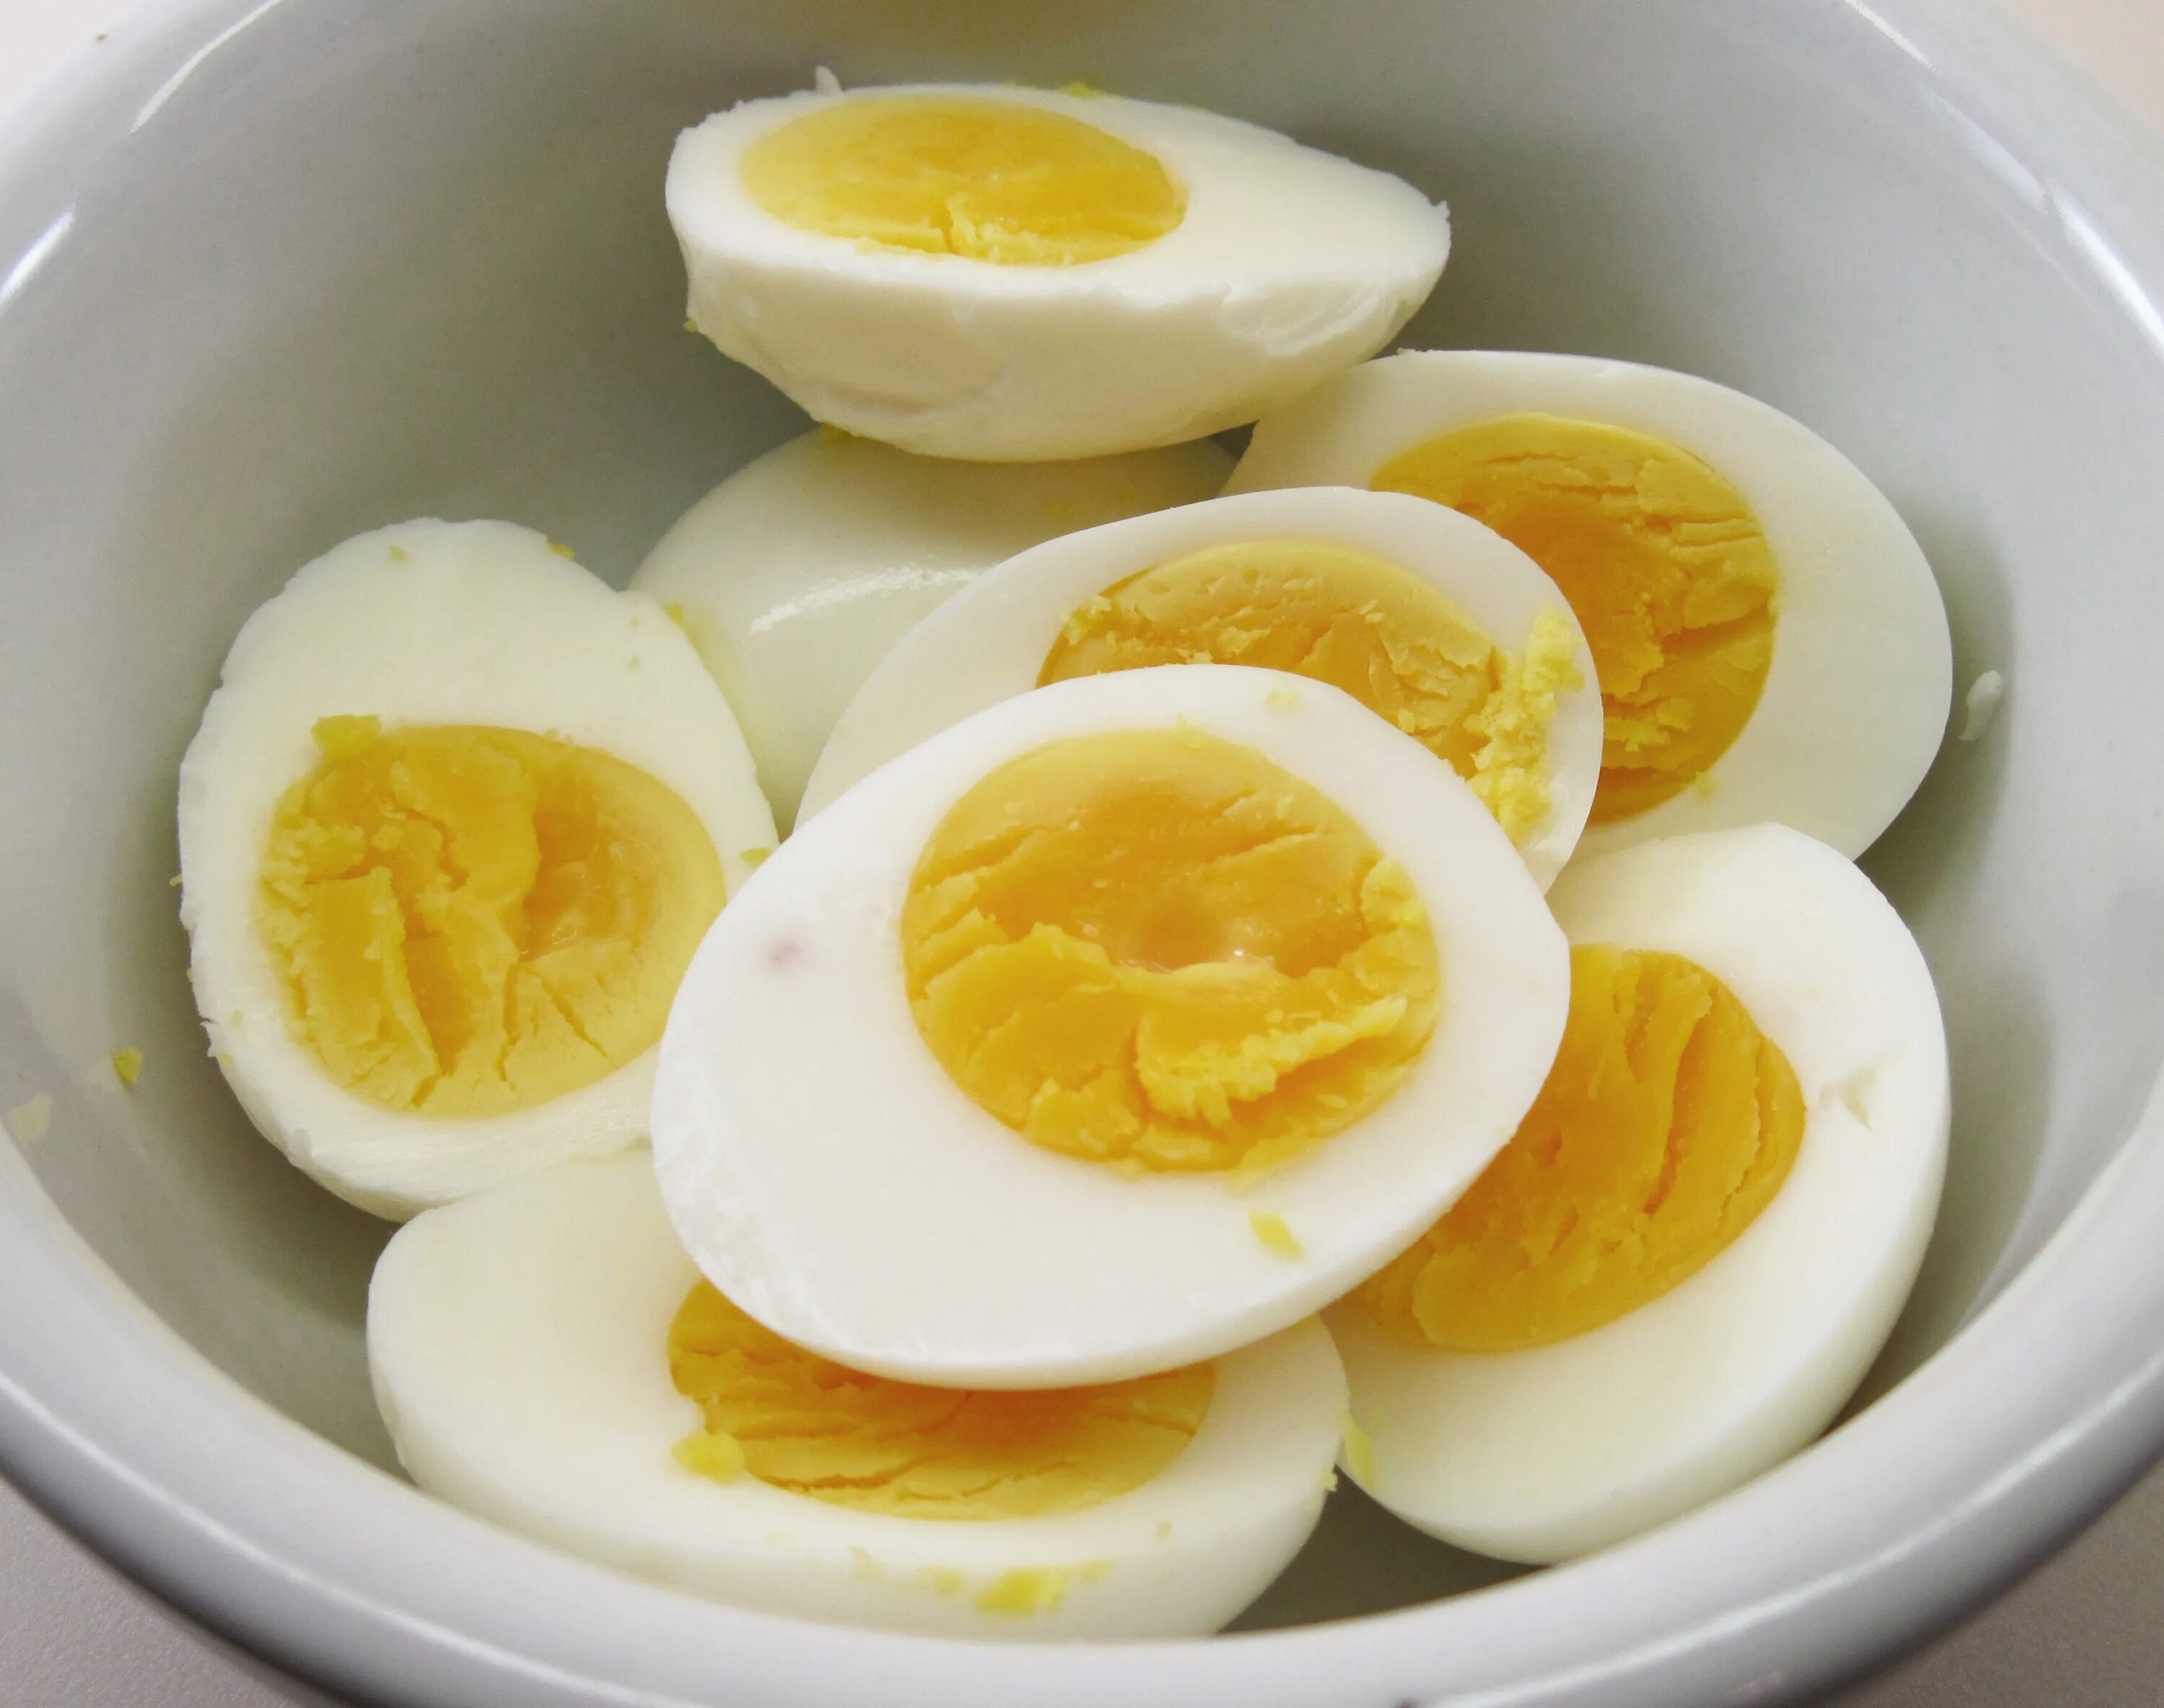 Cooked egg. Завтрак с перепелиными яйцами. Перепелиные яйца яичница. Завтрак из перепелиных яиц. Яичница из перепелиных яиц.